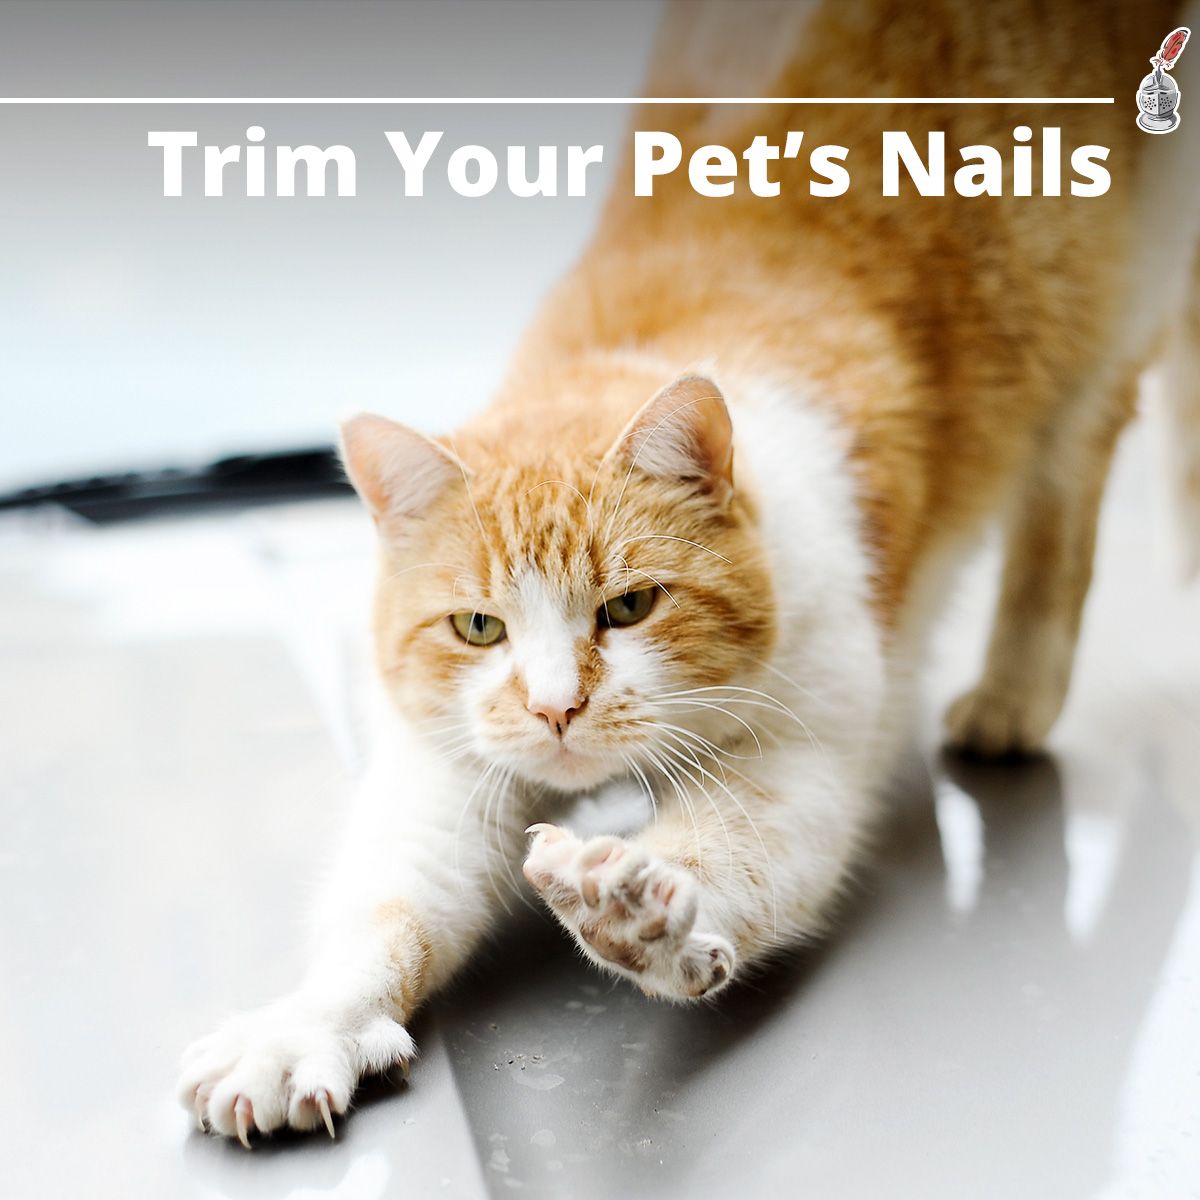 Trim Your Pet's Nails